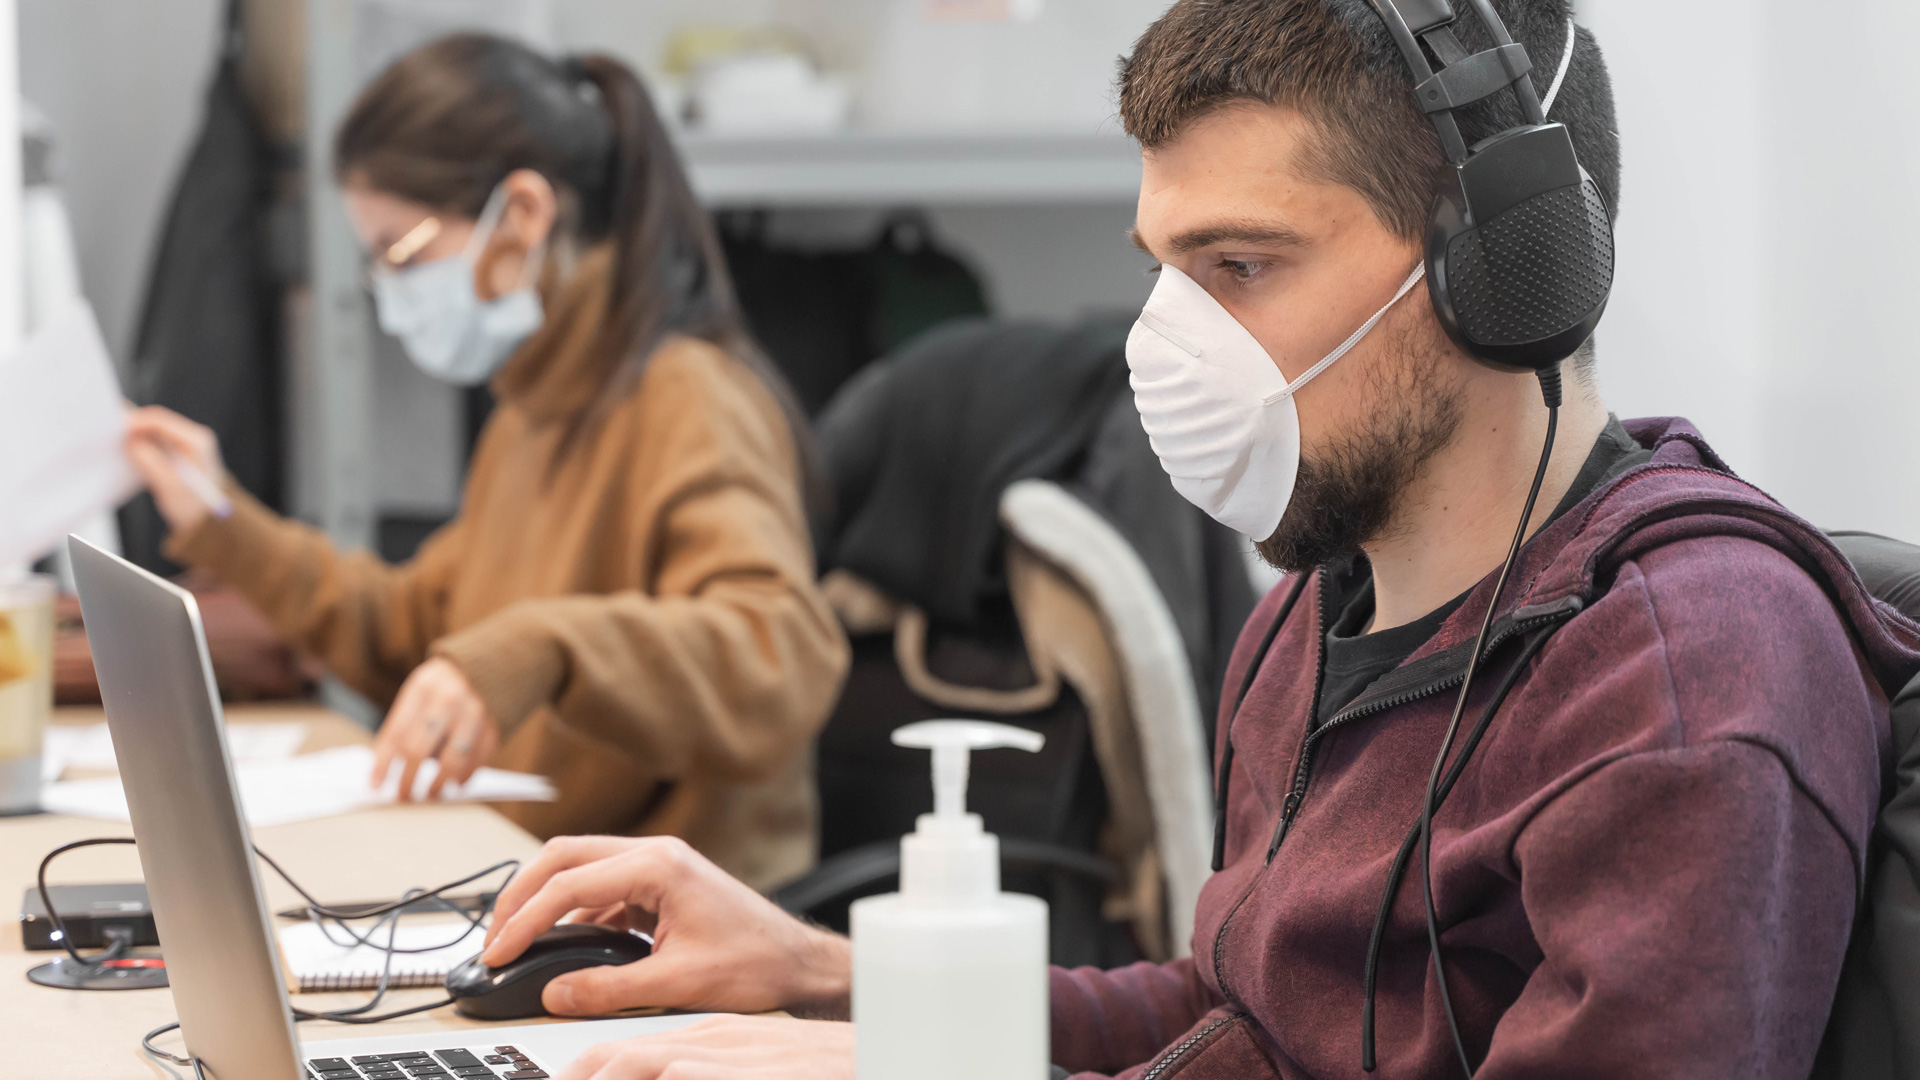 Pandemia: funcionários temem riscos do trabalho presencial segundo pesquisa do LinkedIn